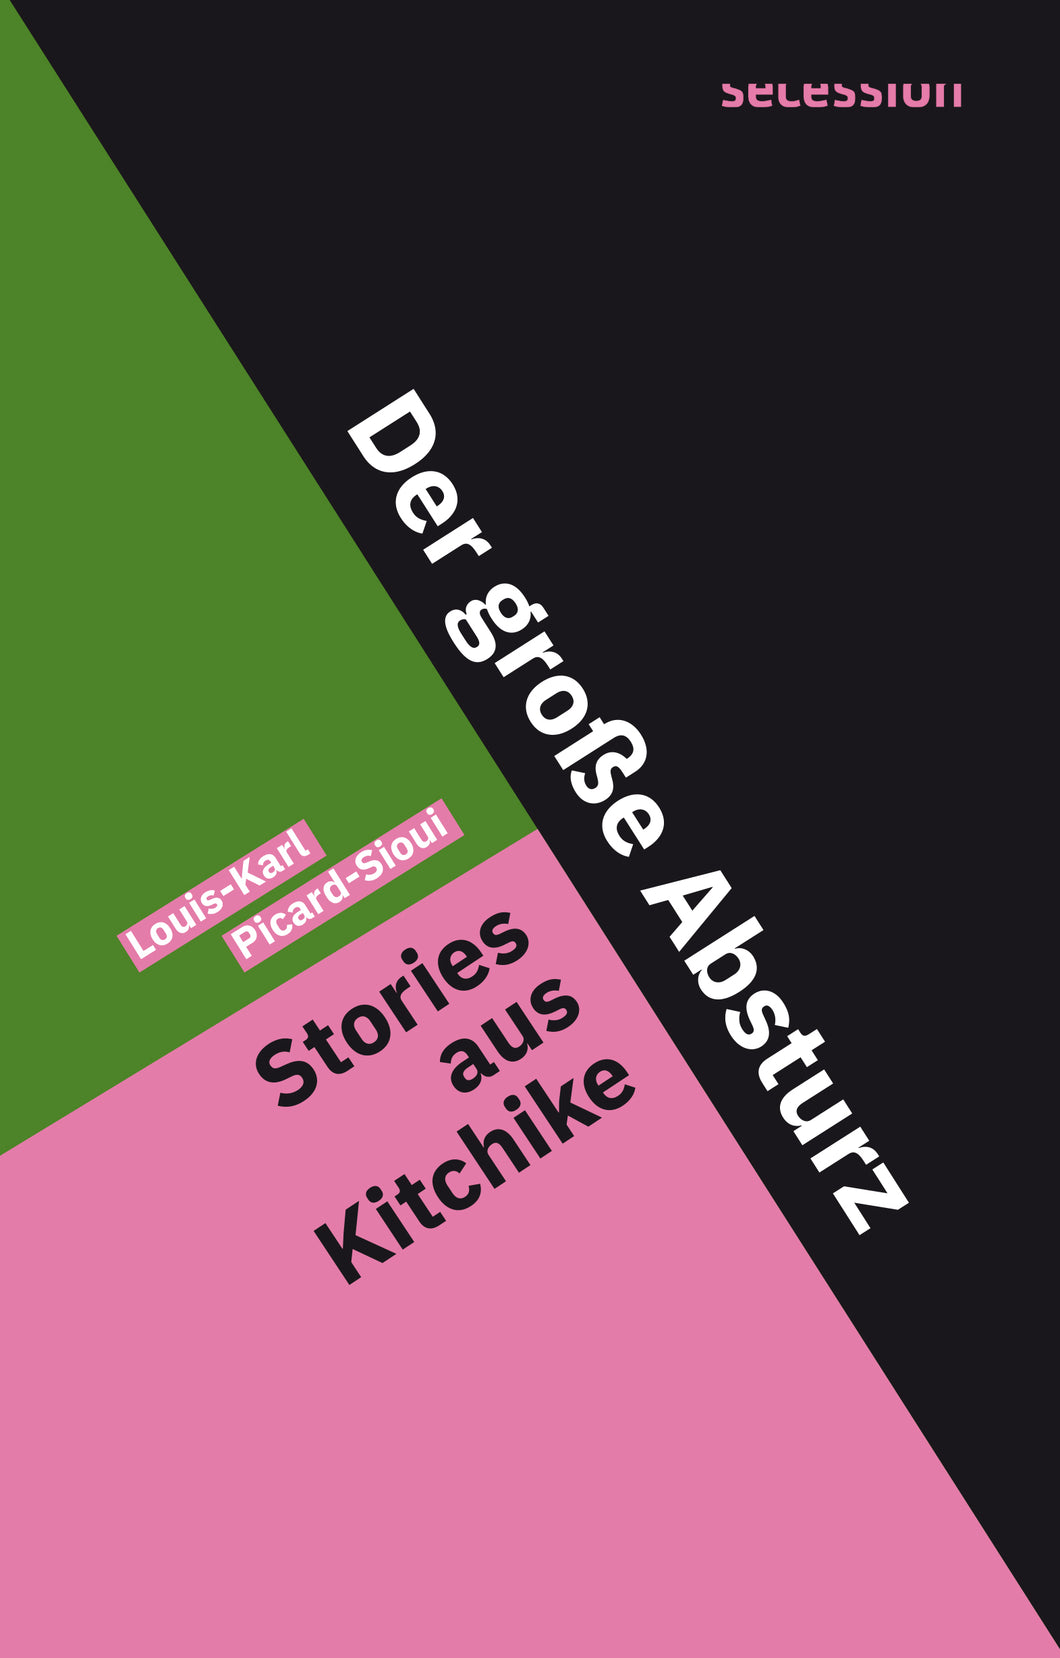 Der große Absturz – Stories aus Kitchike von Louis-Karl Picard-Sioui